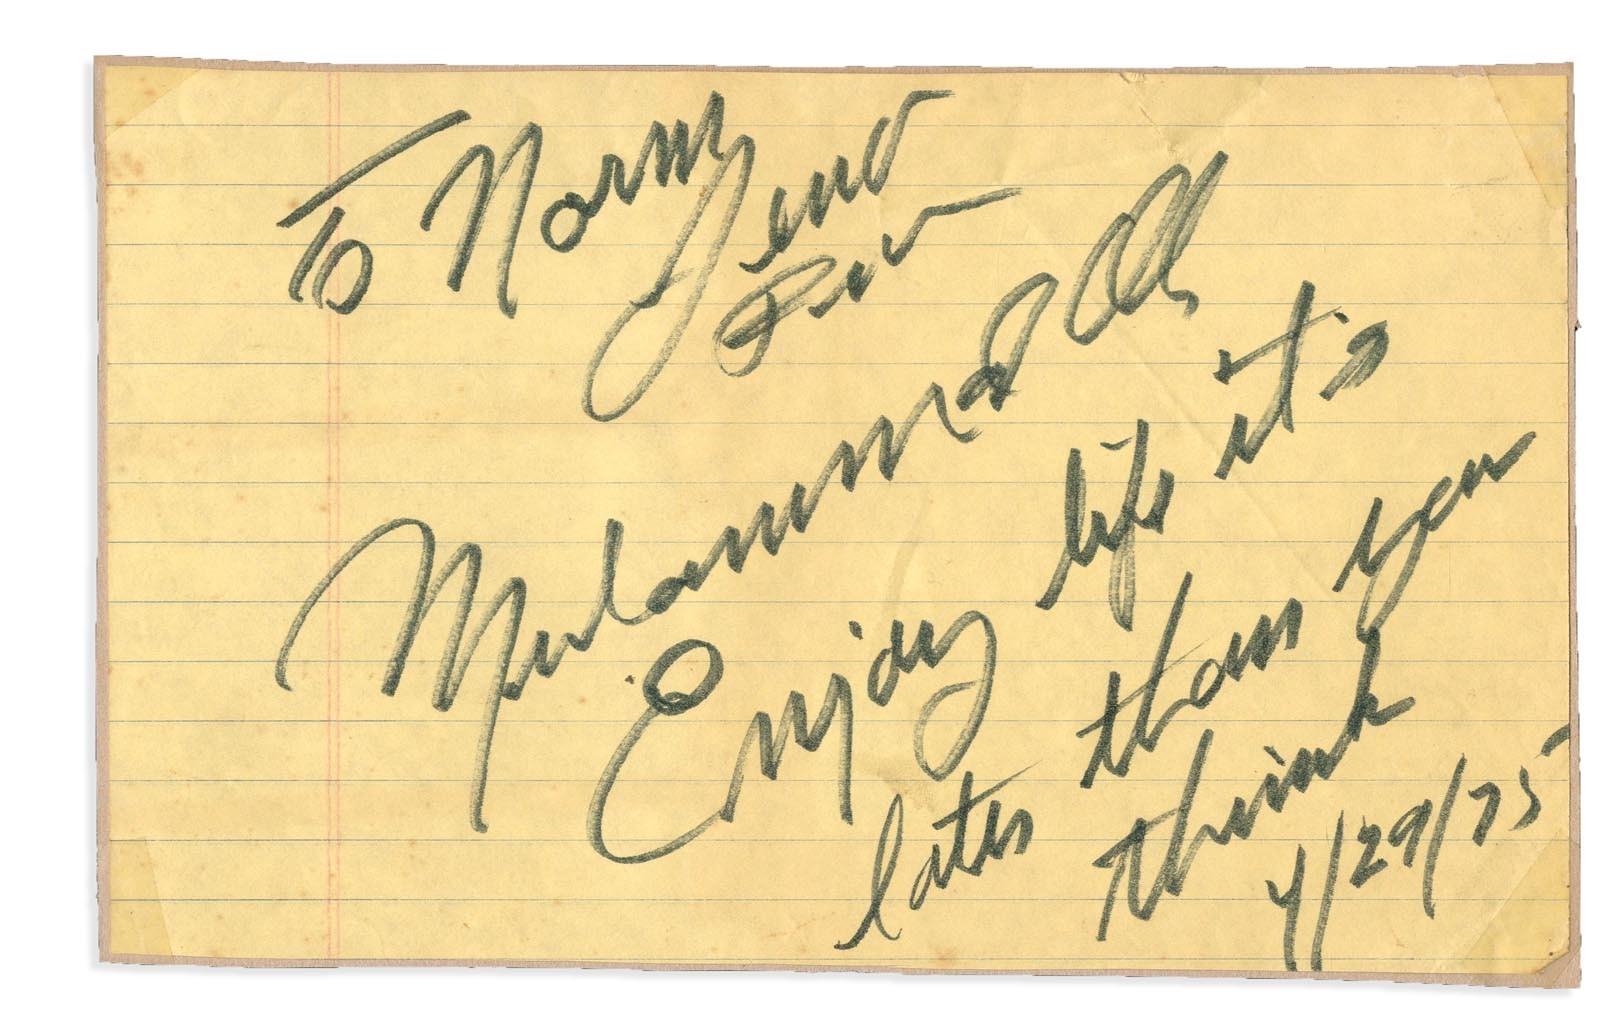 Muhammad Ali & Boxing - Large 1975 Muhammad Ali Signed "Enjoy Life" Handwritten Note